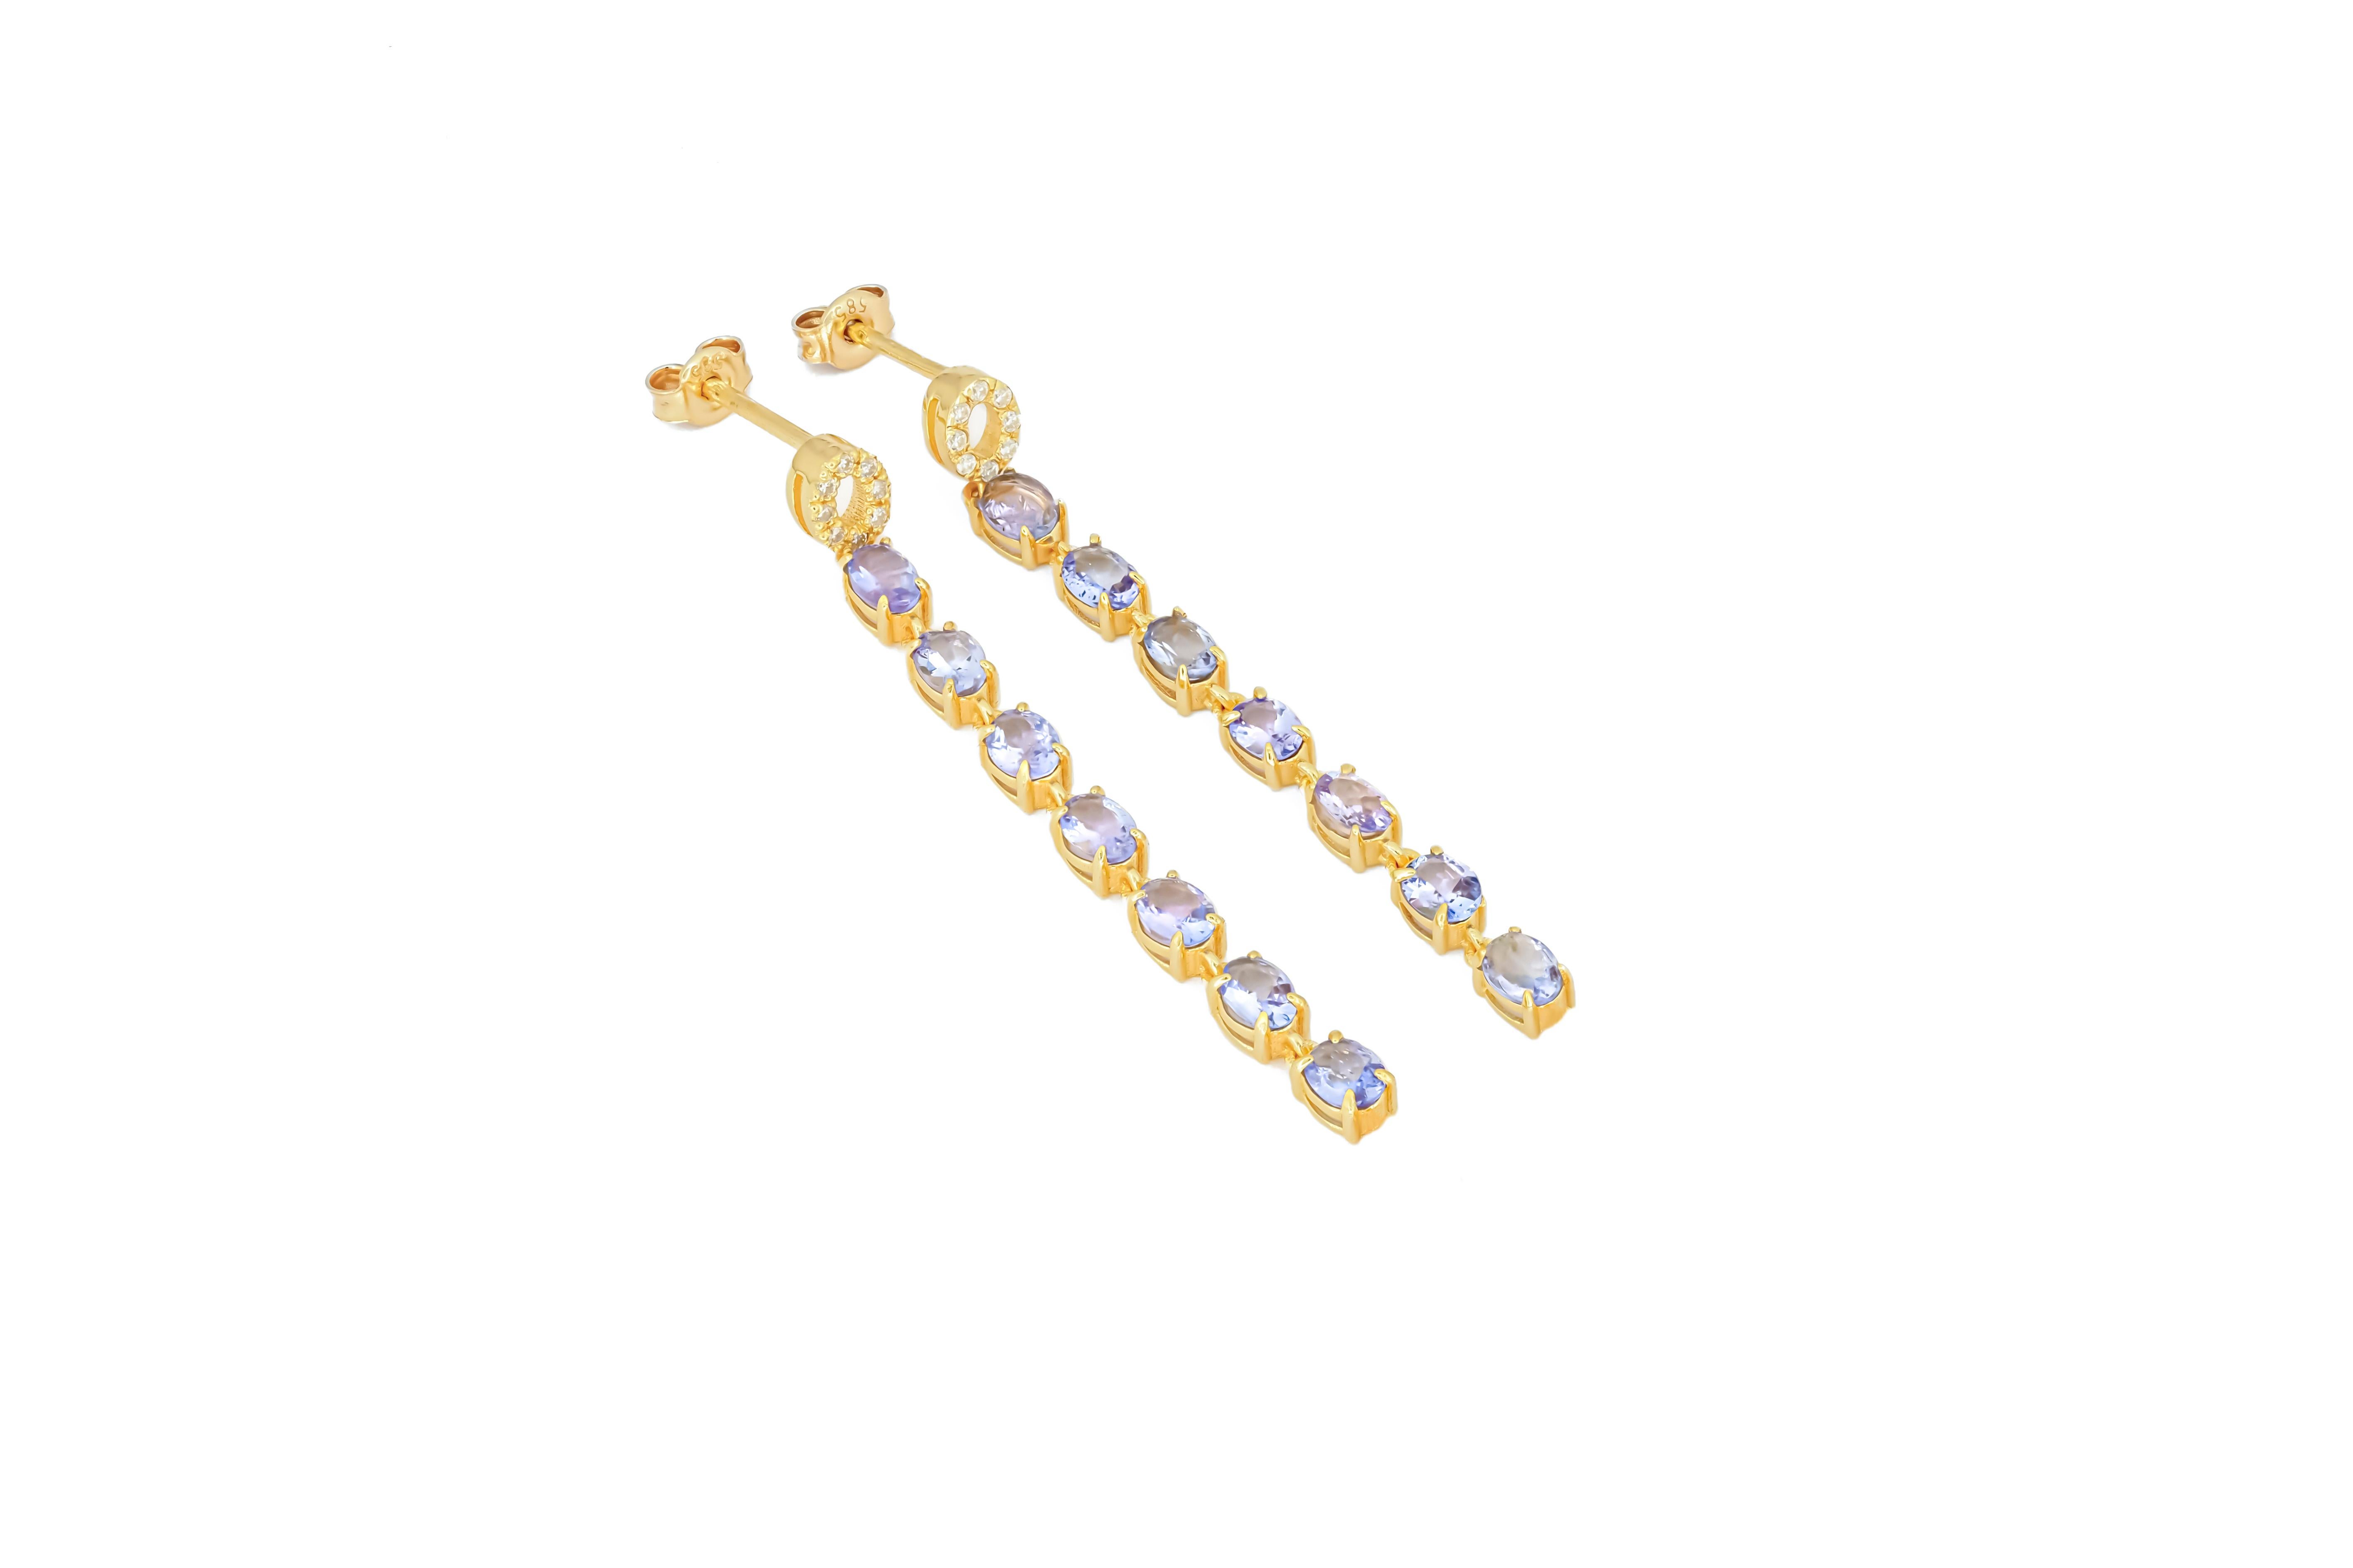 Oval Cut Tanzanite dangle earrings studs in 14k gold. For Sale